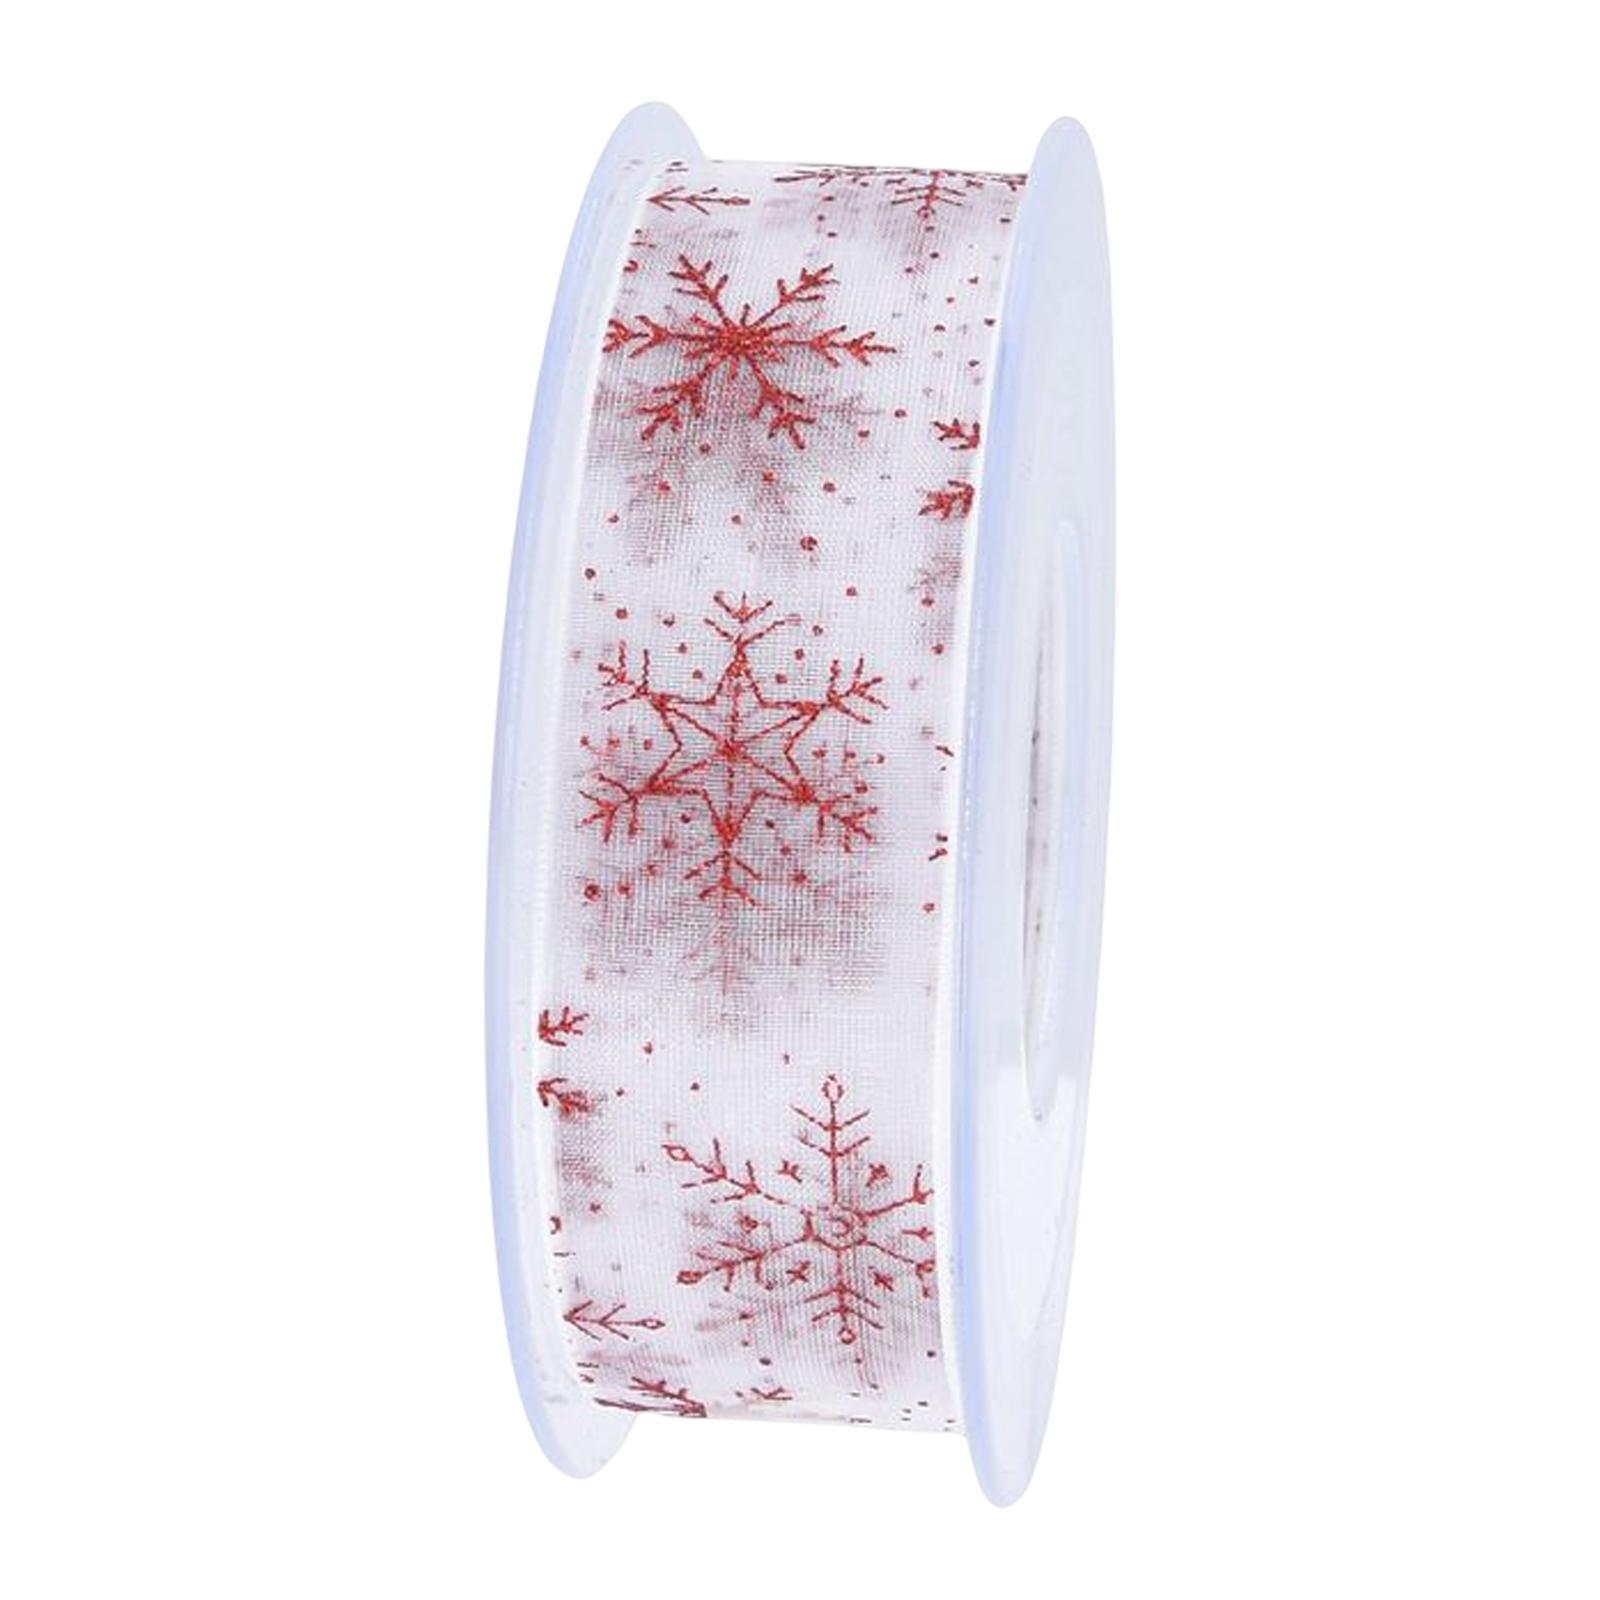 Snowflake Ribbon Christmas DIY Gifts Wrapping Home Decoration Hair Bow Making Holiday